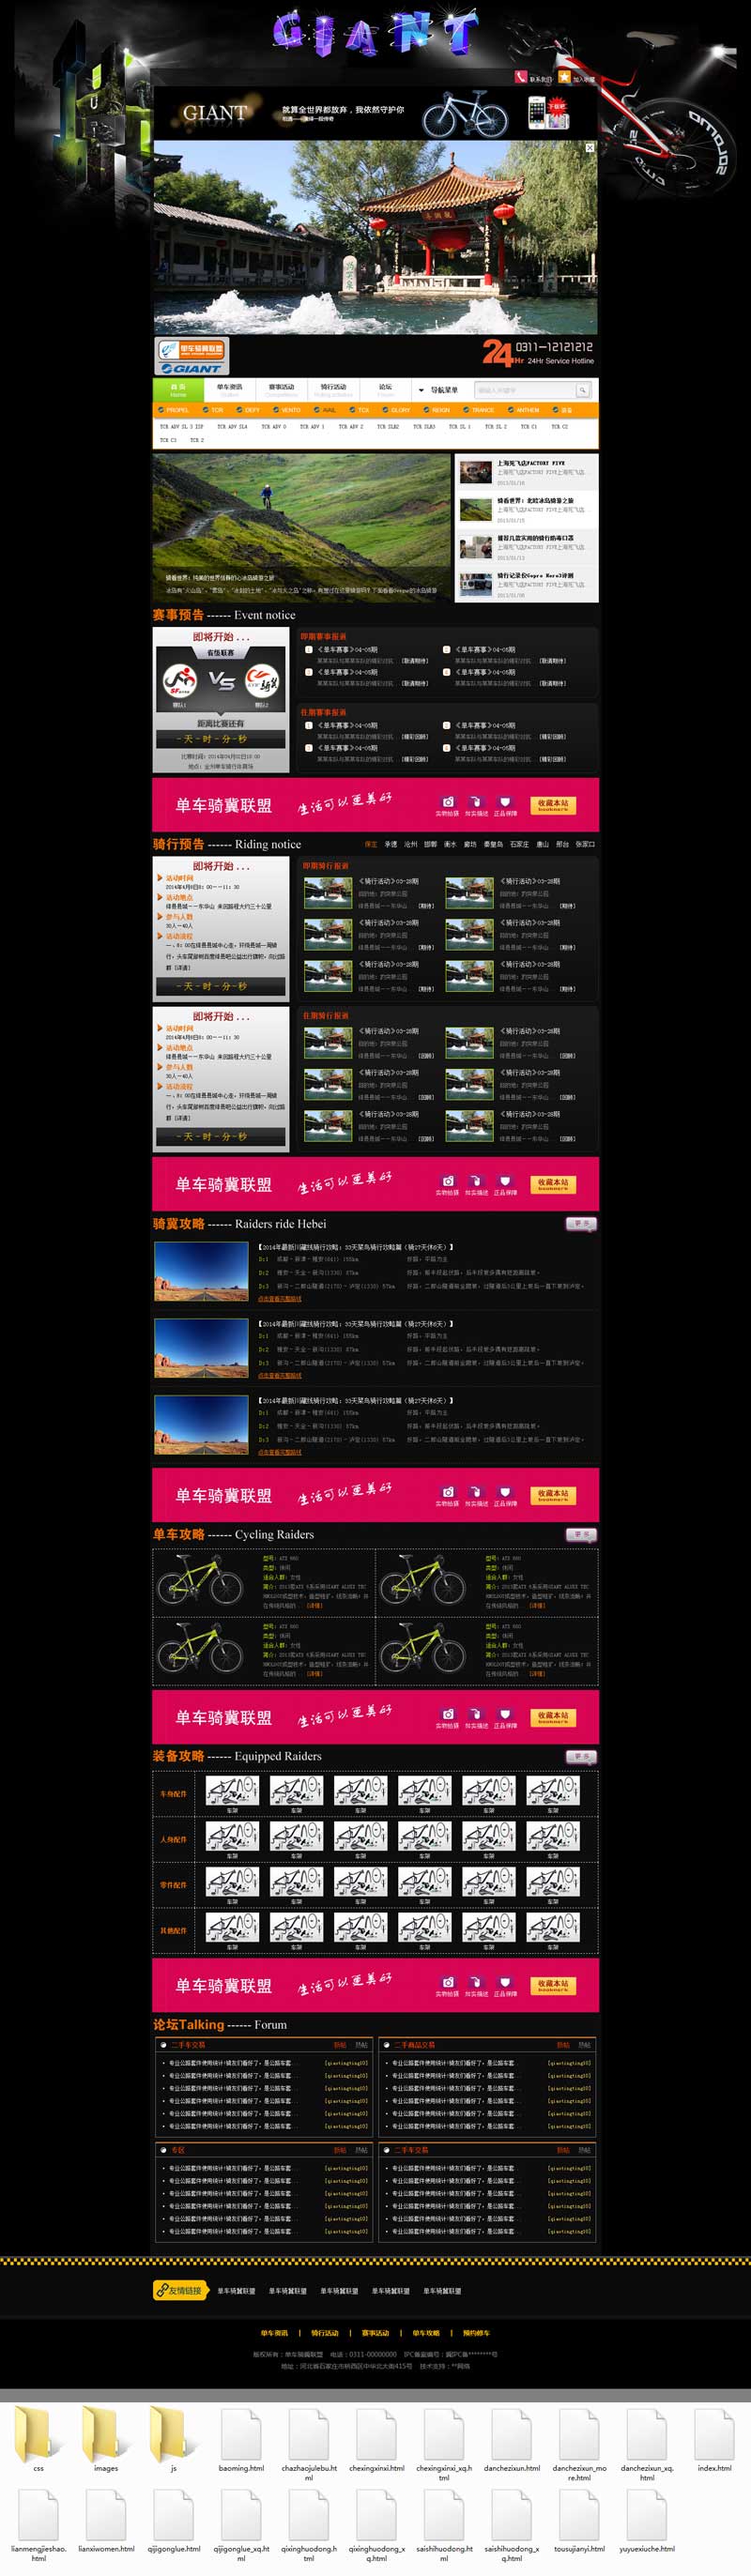 单车俱乐部联盟平台网页模板